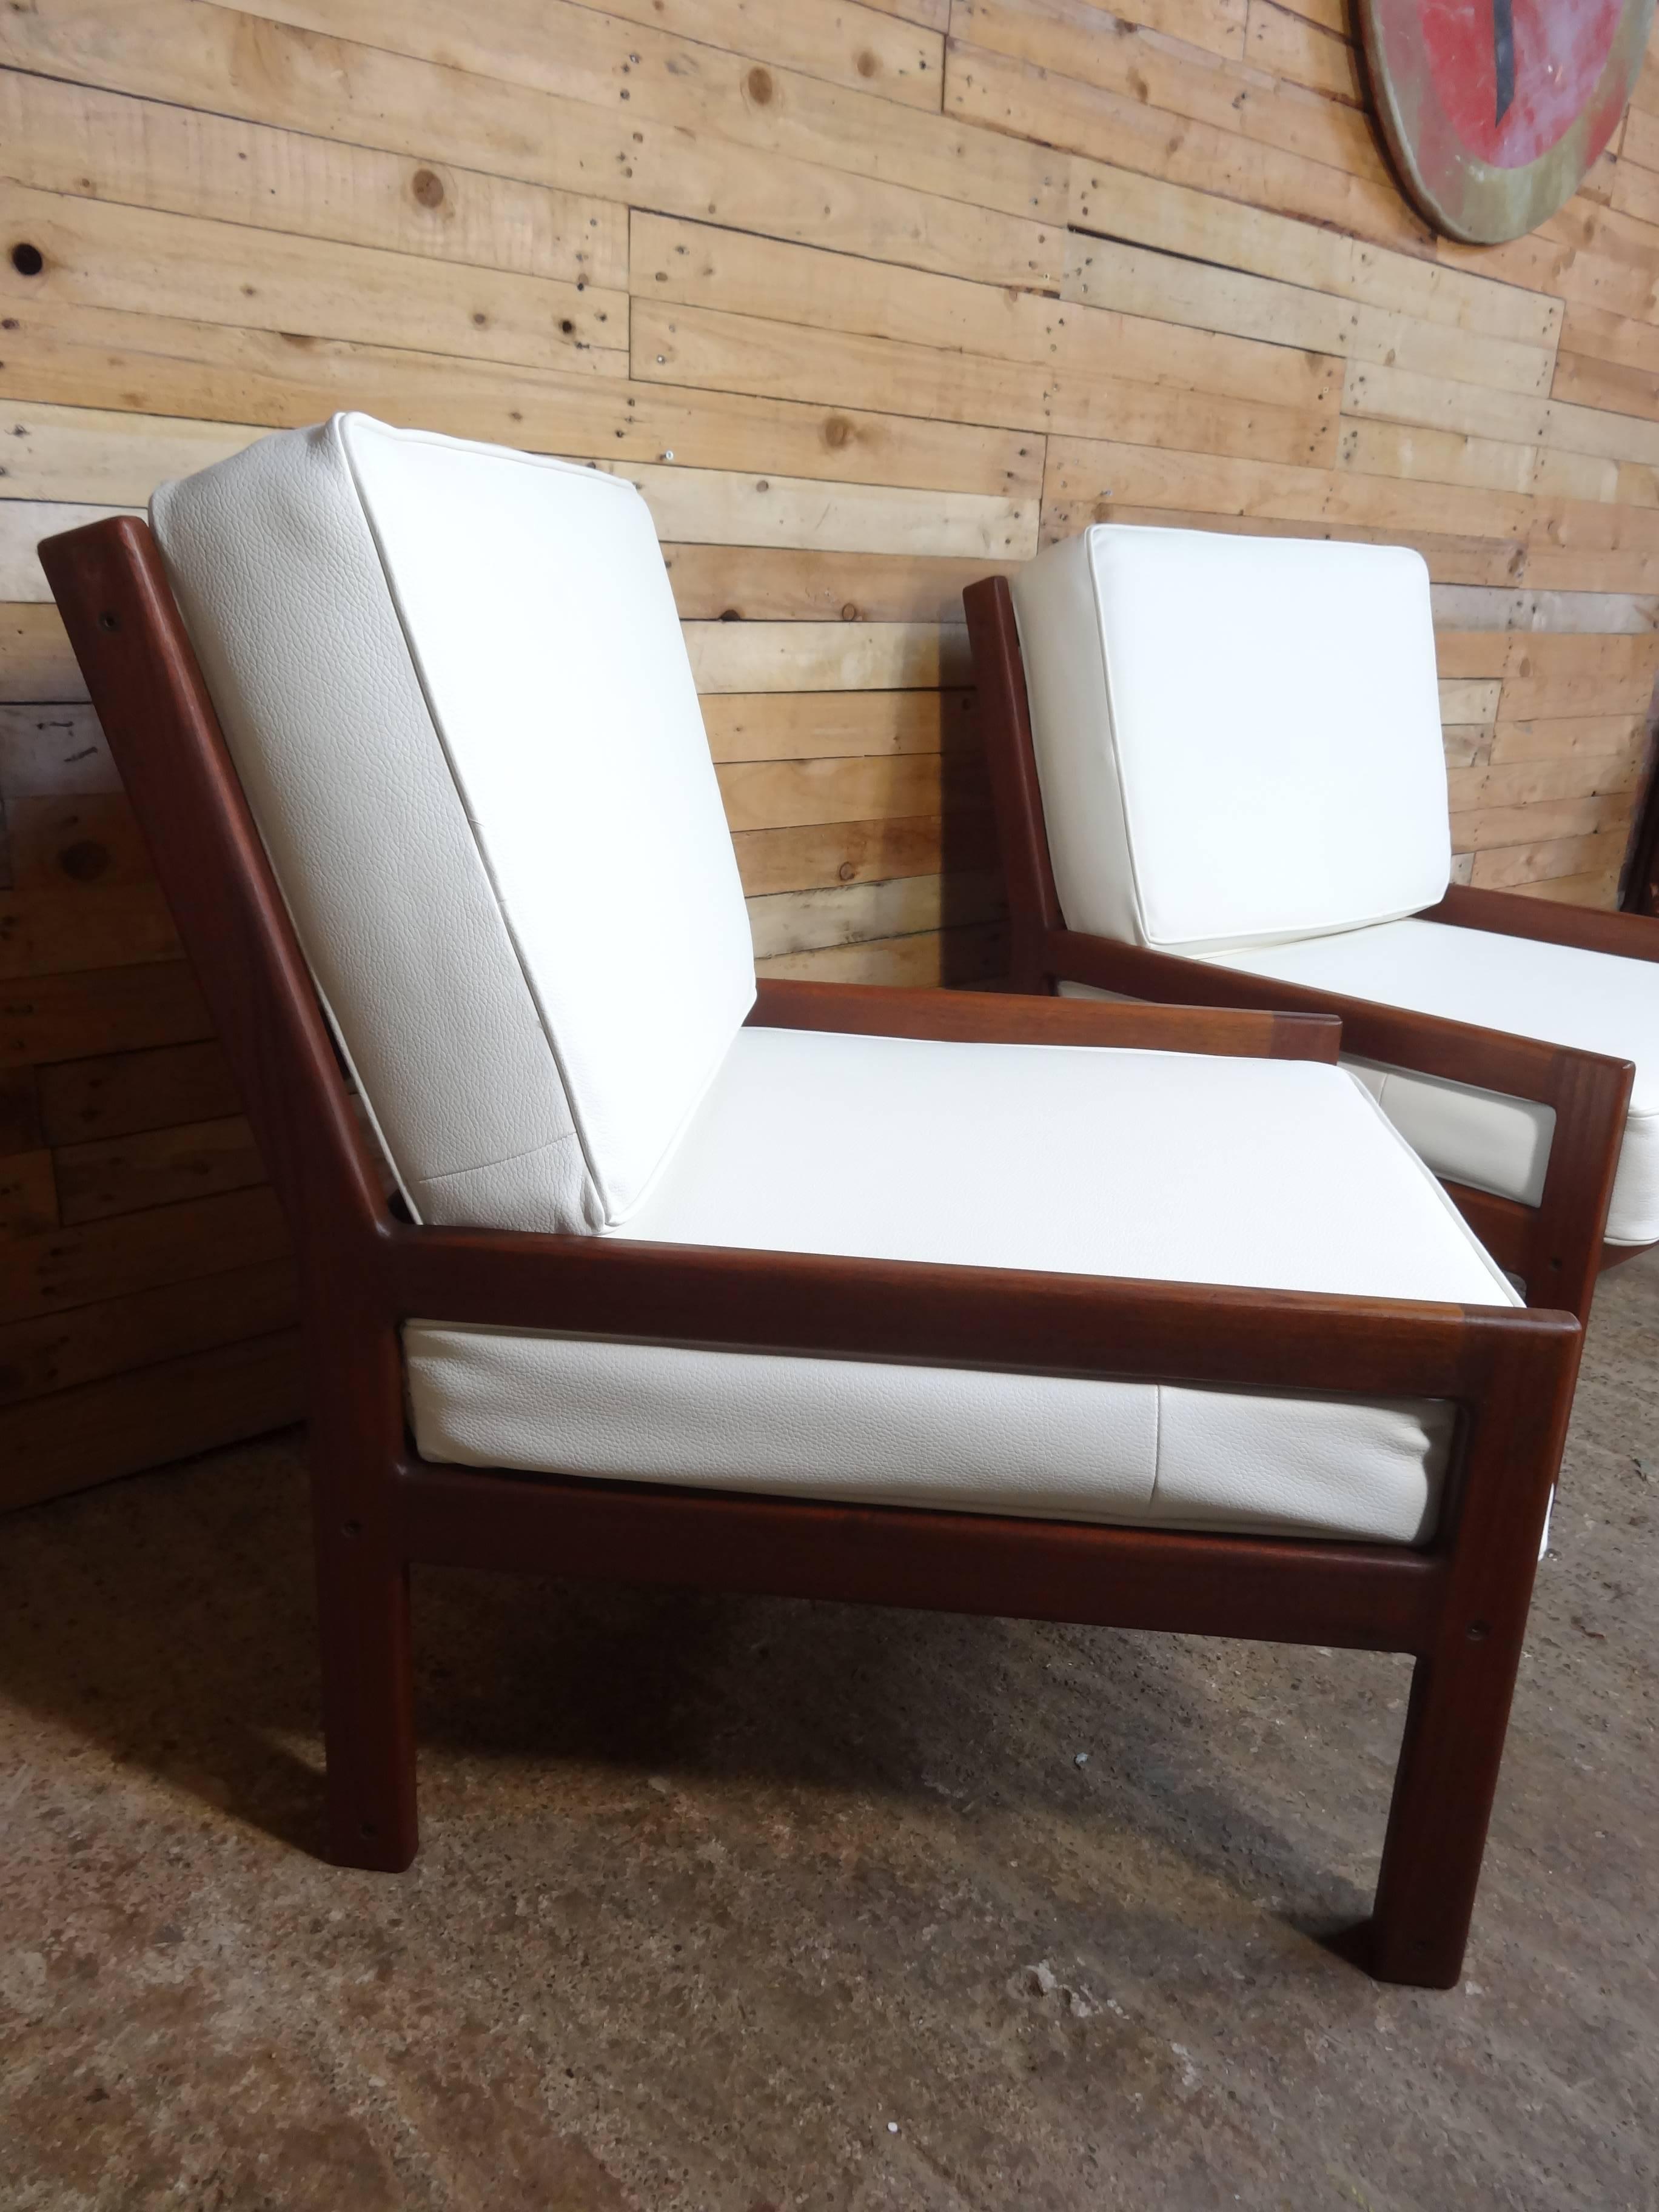 white retro chairs